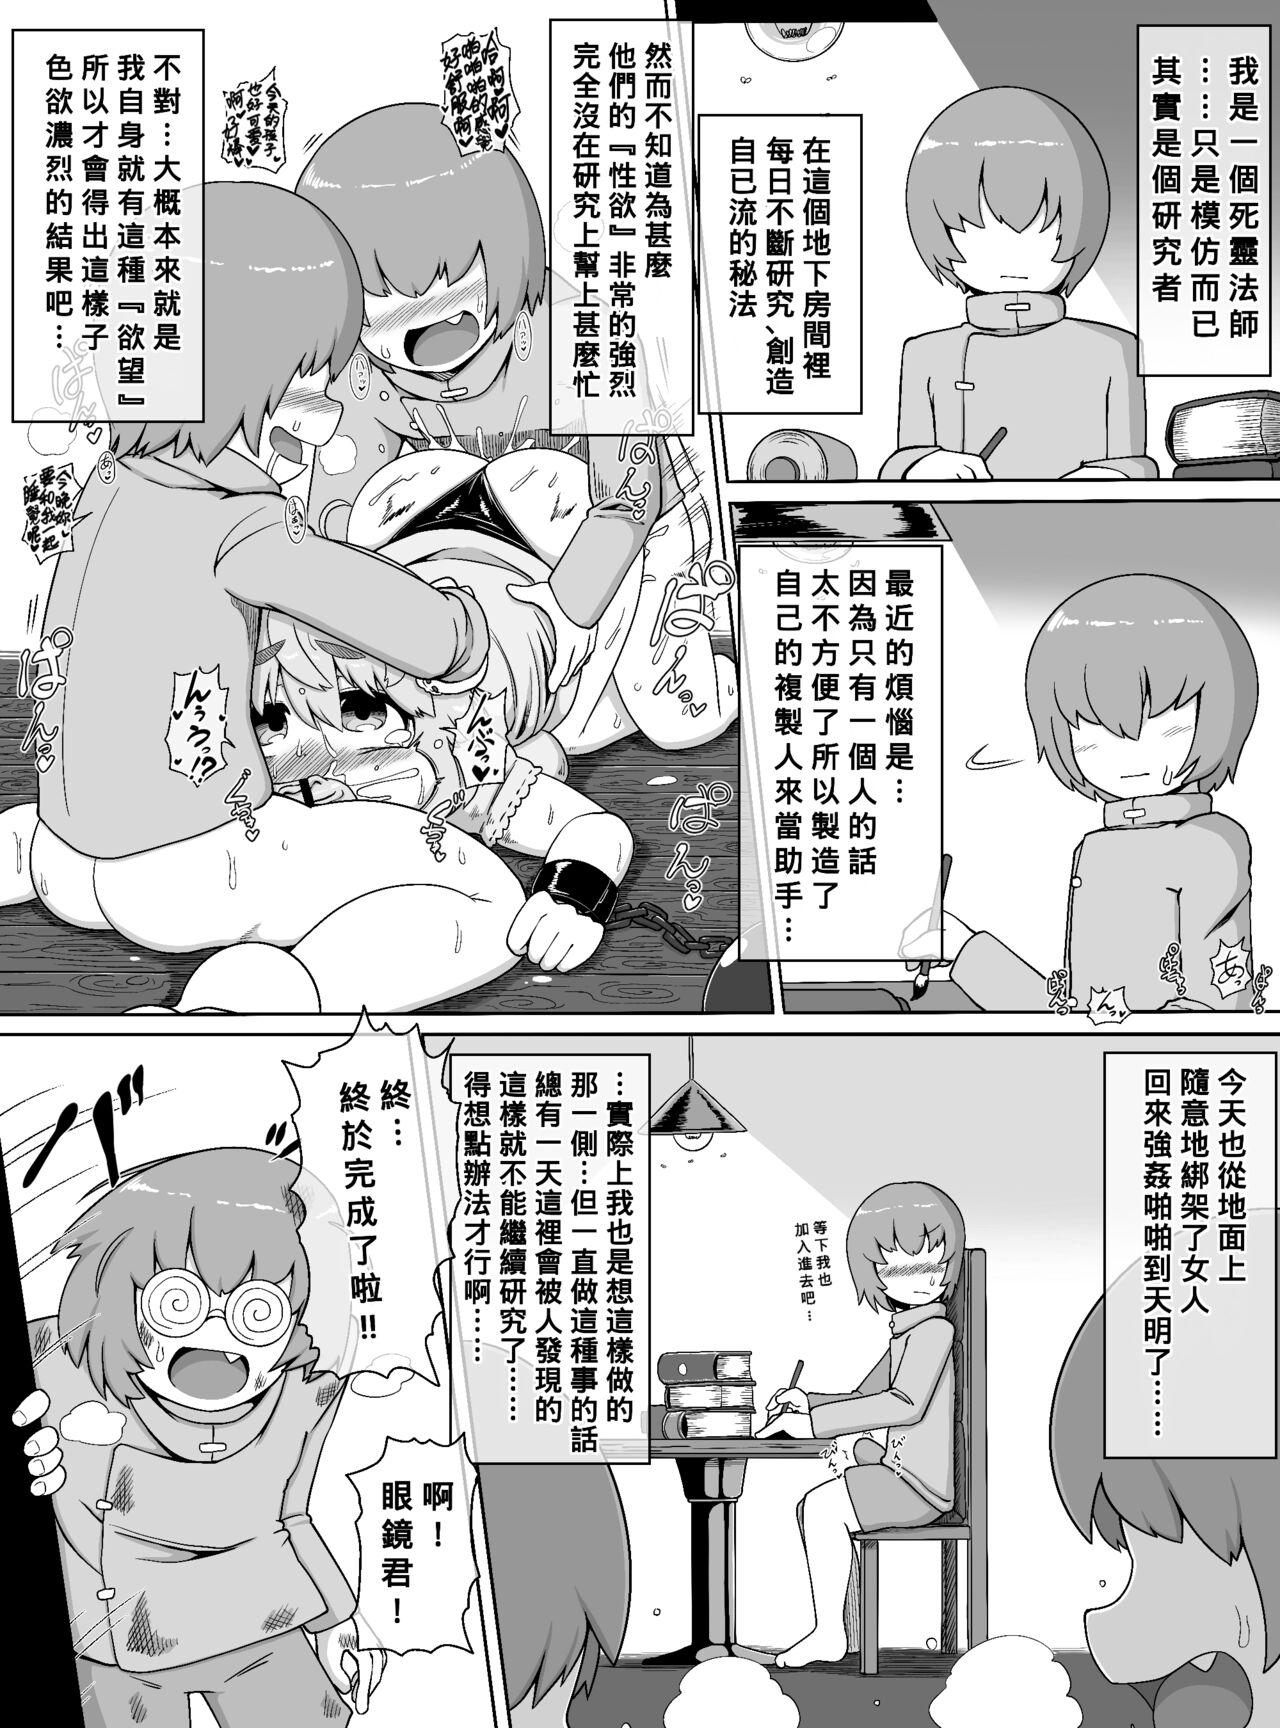 Family Choushin Bakunyuu Muchimuchi Kyonshii ga Kyokon Shota Gundan no Seishori Onaho ni sareru dake no Manga - Original Real - Picture 2